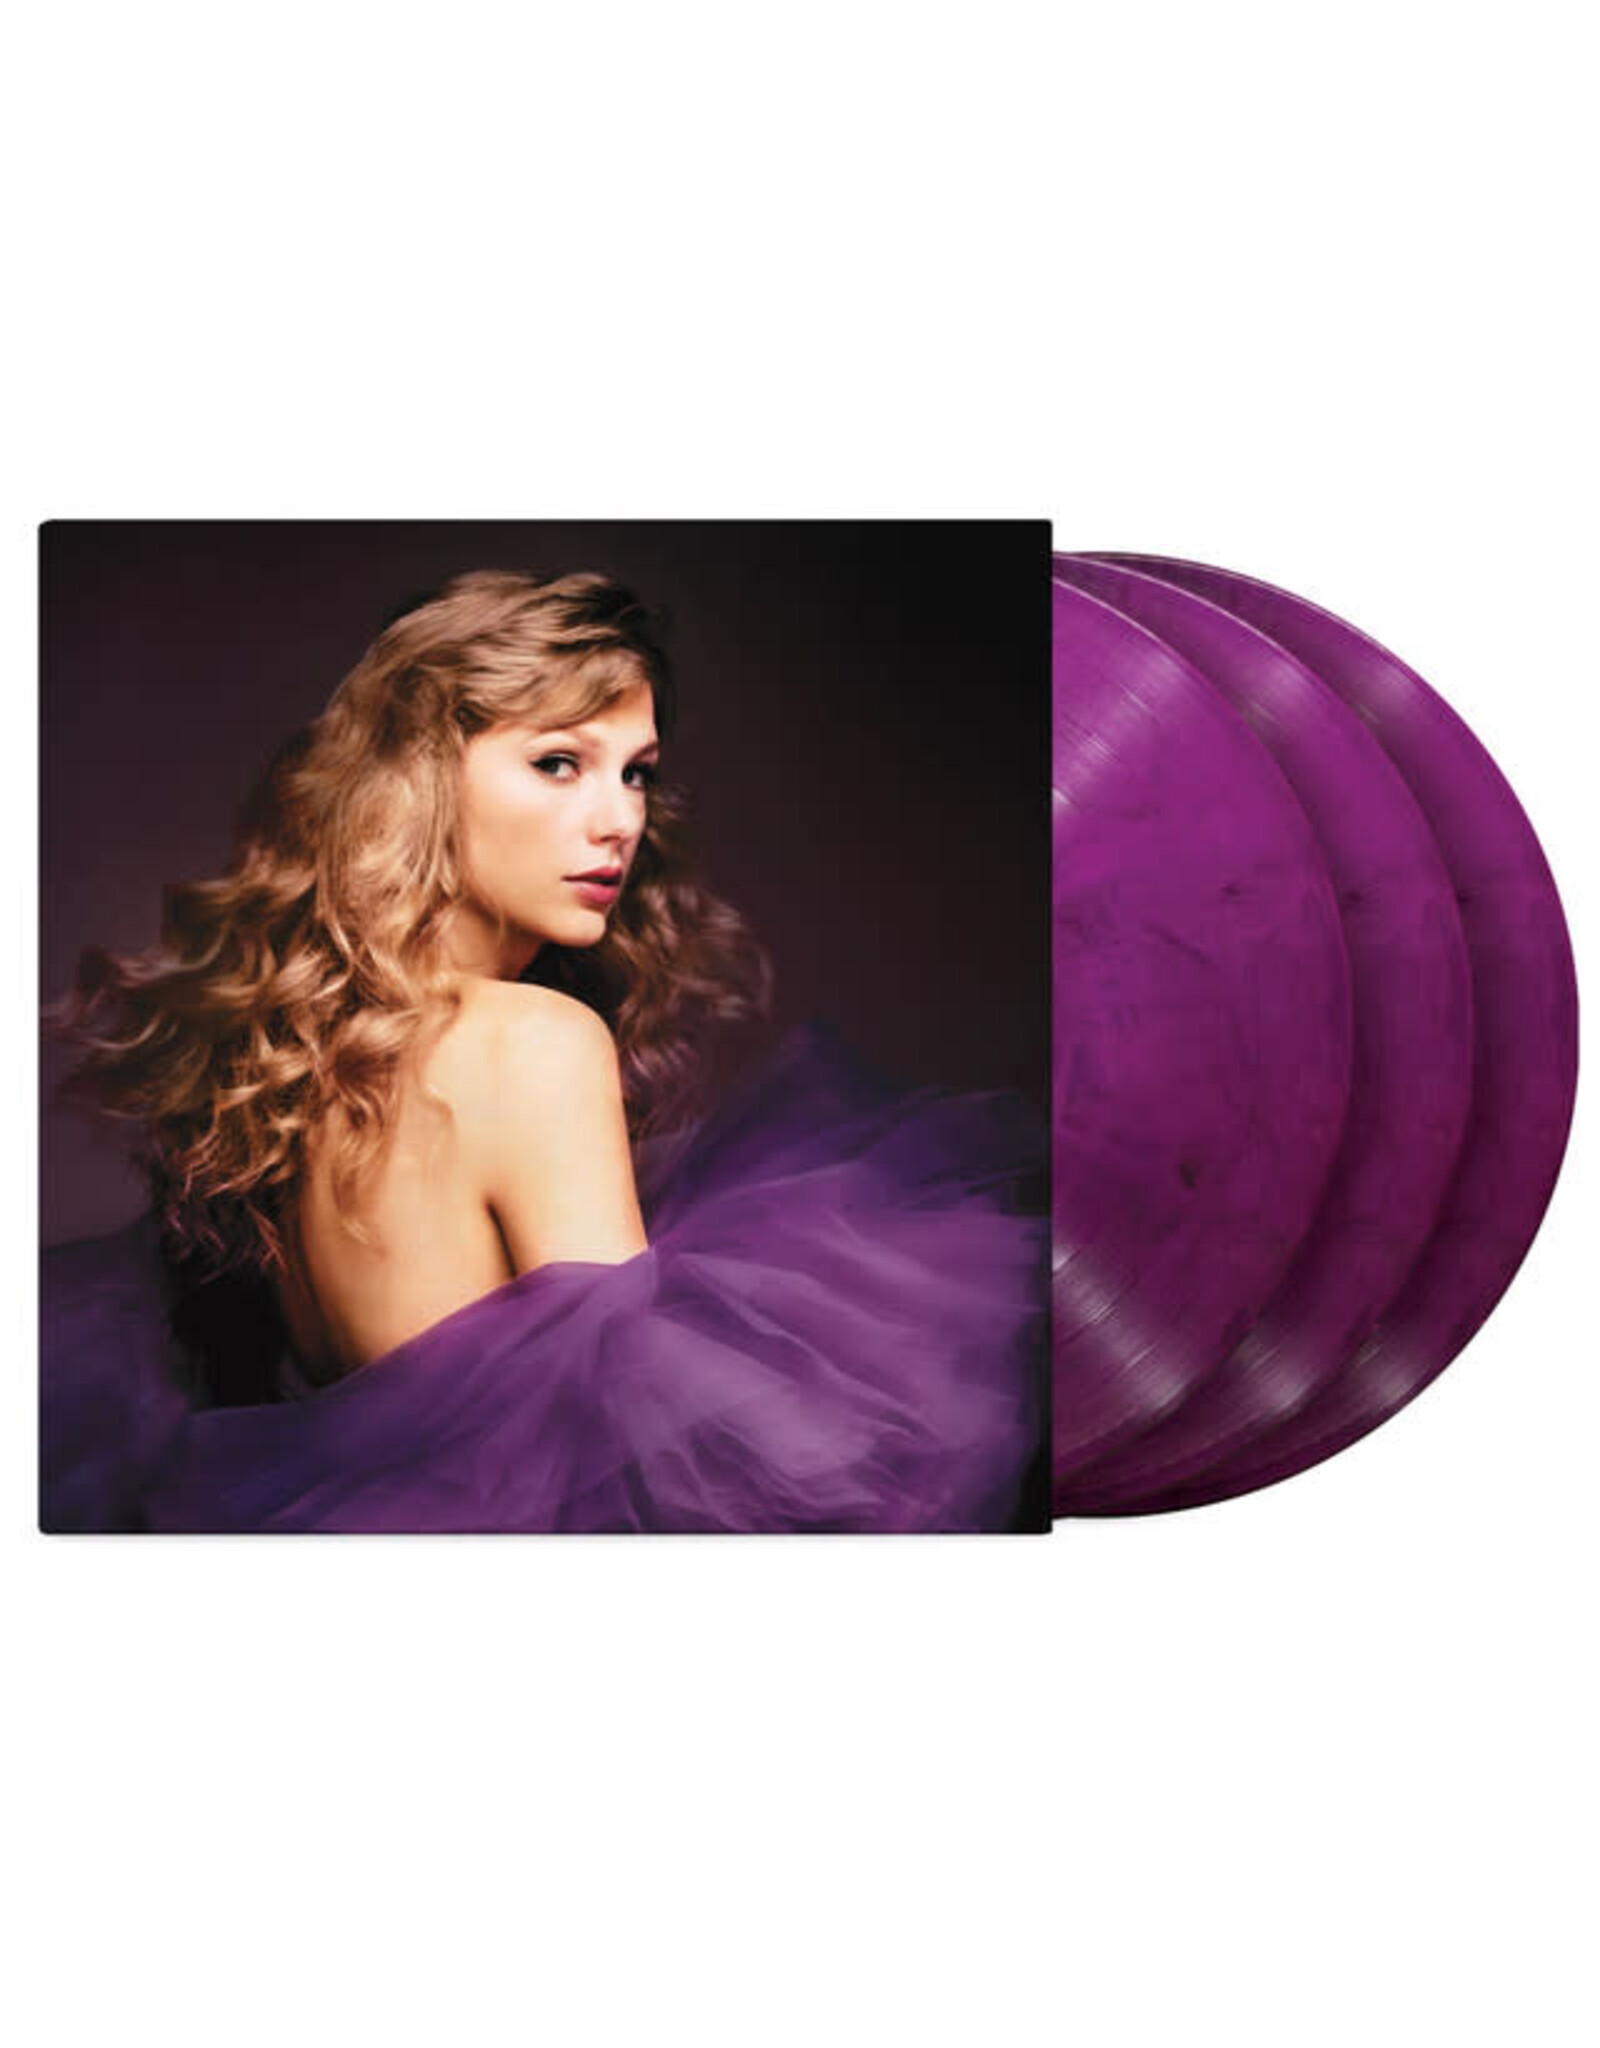 Republic Swift, Taylor: Speak Now (Taylor's Version) LP